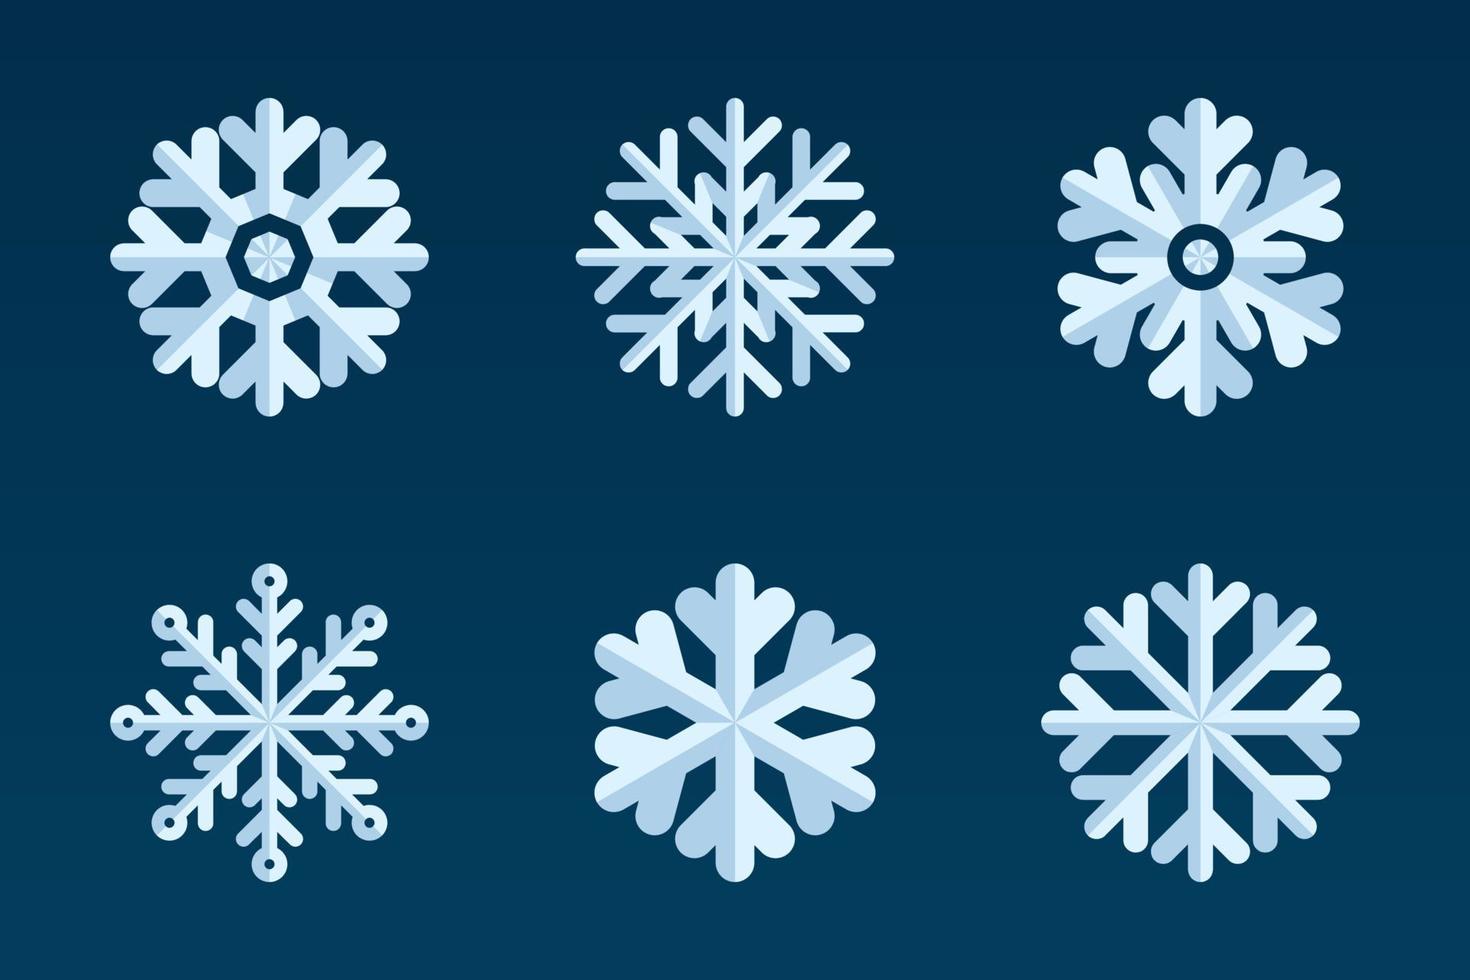 colección de copos de nieve. estilo plano. conjunto de iconos tradicionales navideños e invernales para diseño de logotipo, impresión, pegatina, emblema, etiqueta, insignia, saludo e invitación vector